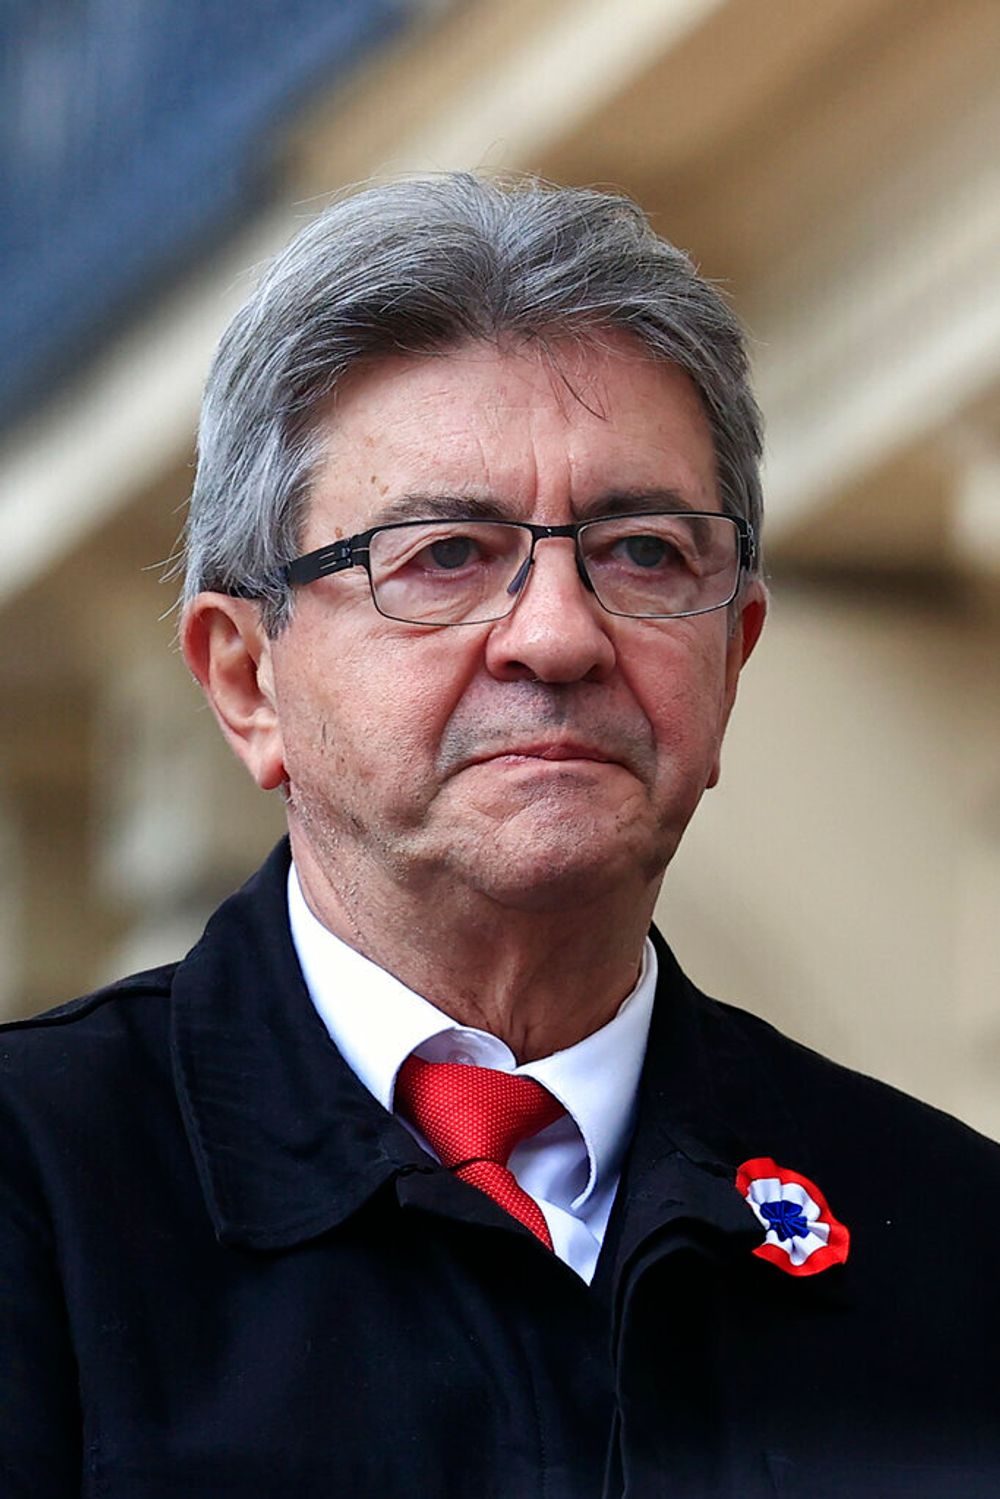 Le dirigeant du parti LFI Jean-Luc Mélenchon